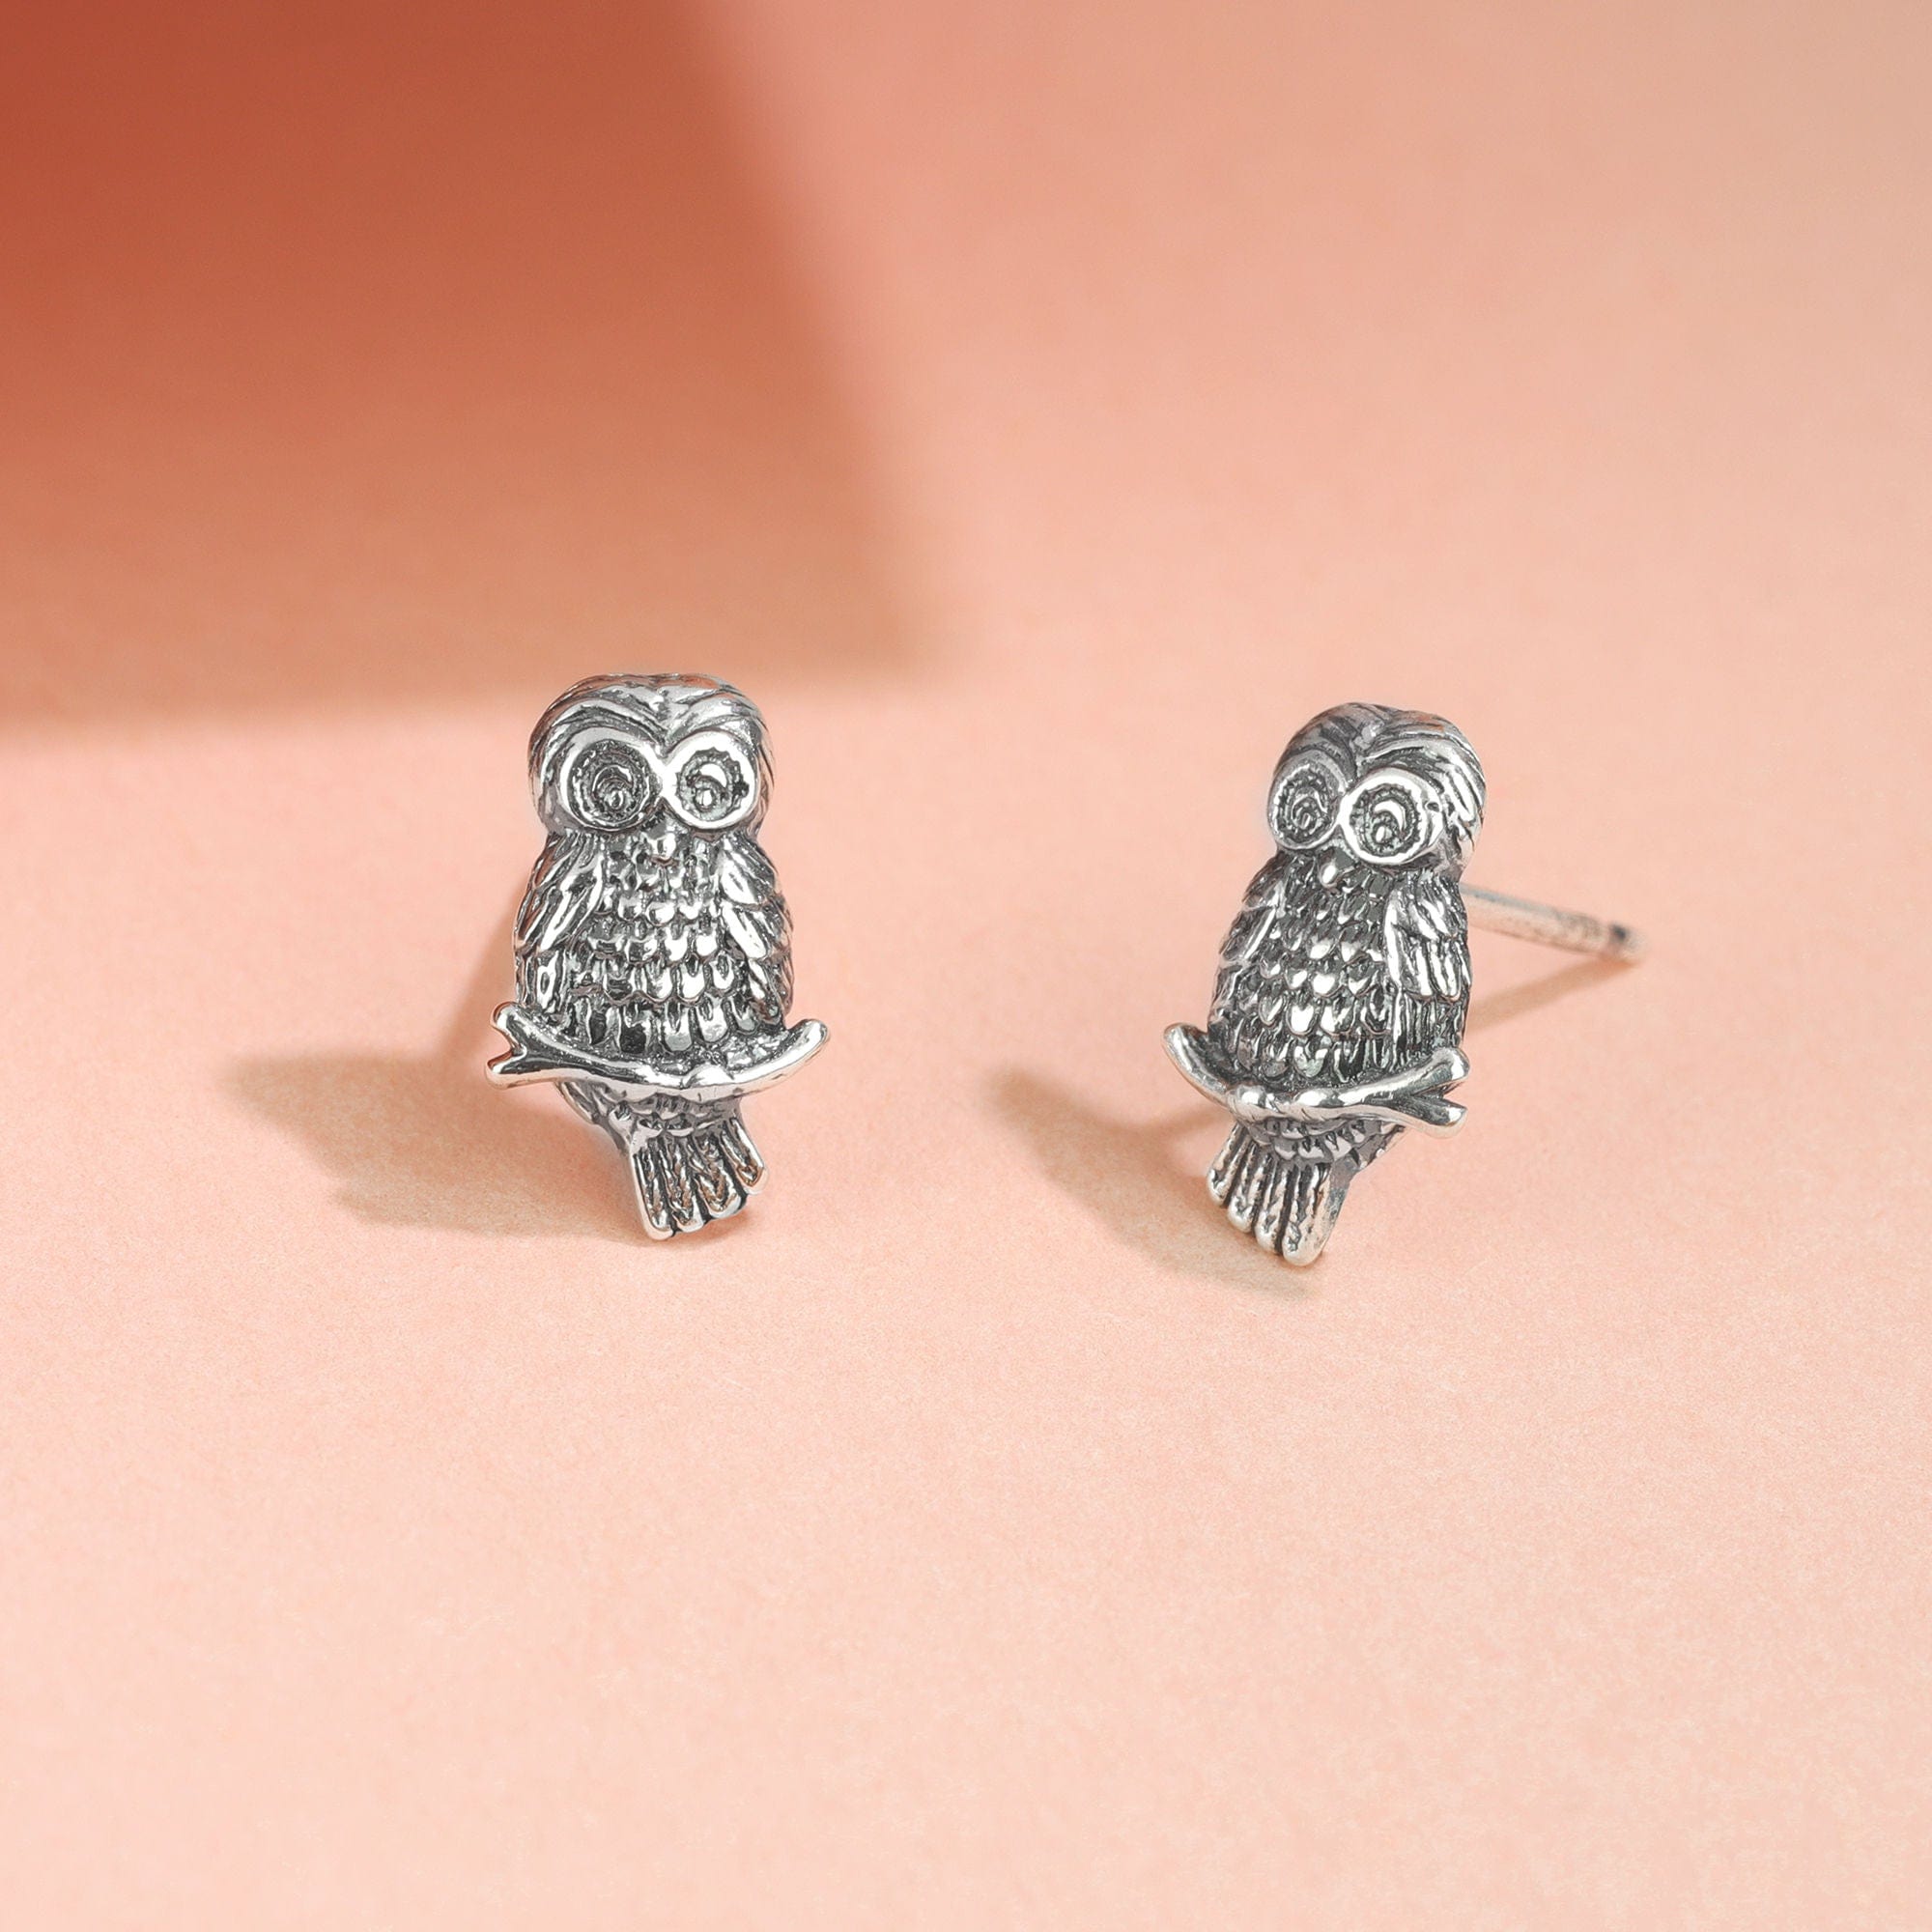 Boma Jewelry Earrings Wise Owl Stud Earrings